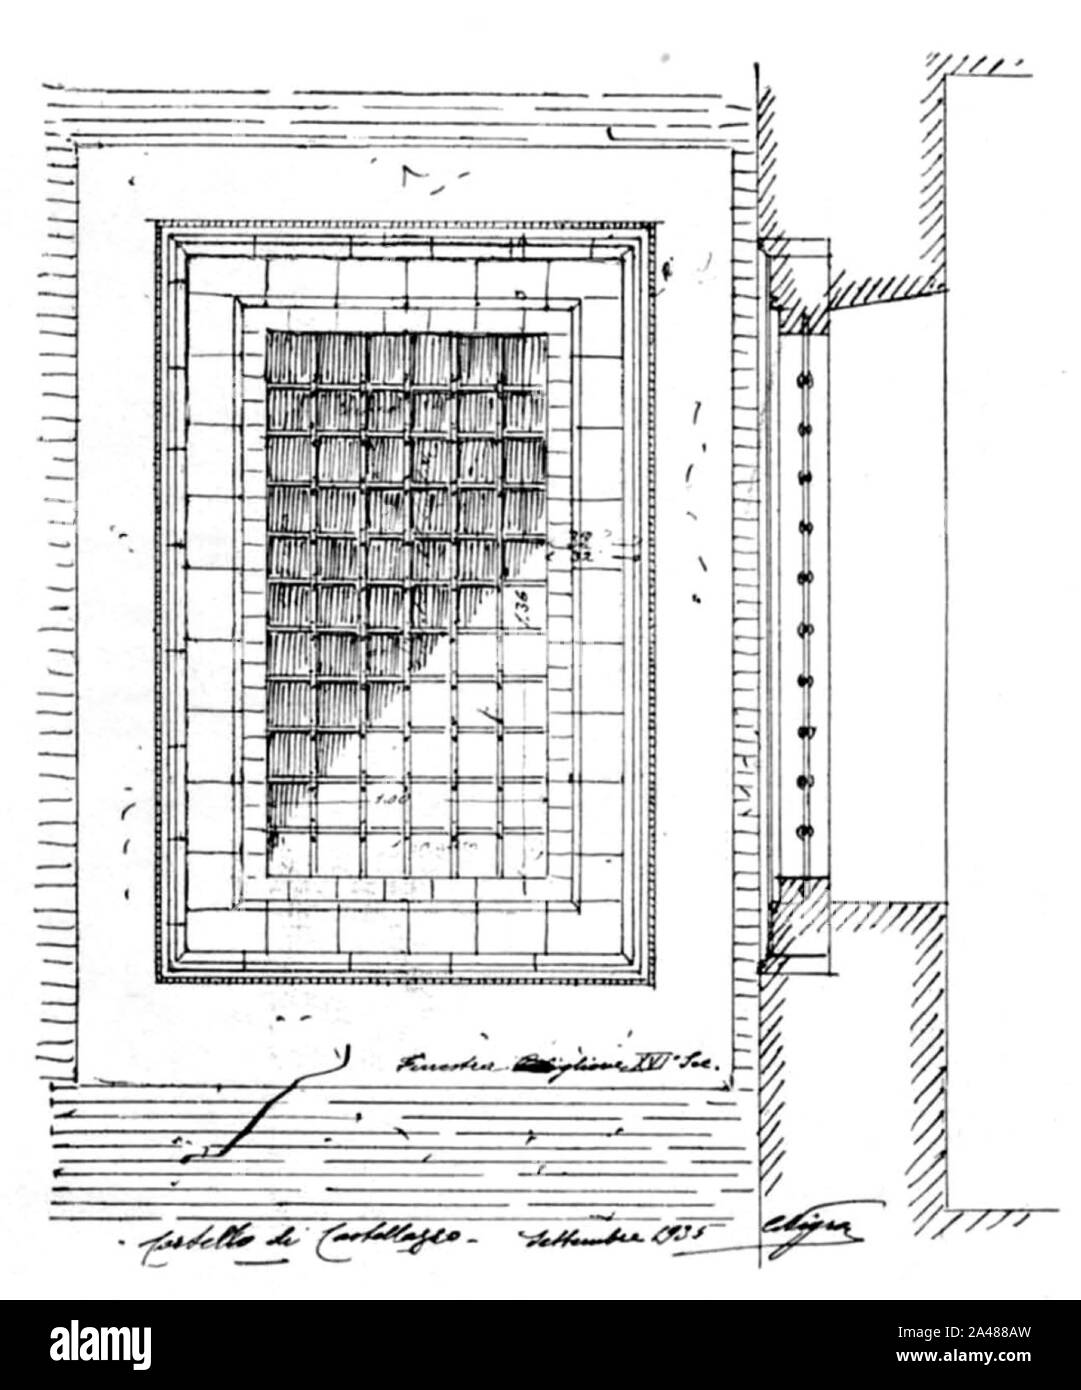 Abb. 88, Castello di Castellazzo, finestra sec XVI, p 184, dis nigra, Sett 1935 nigra il Novarese. Stockfoto